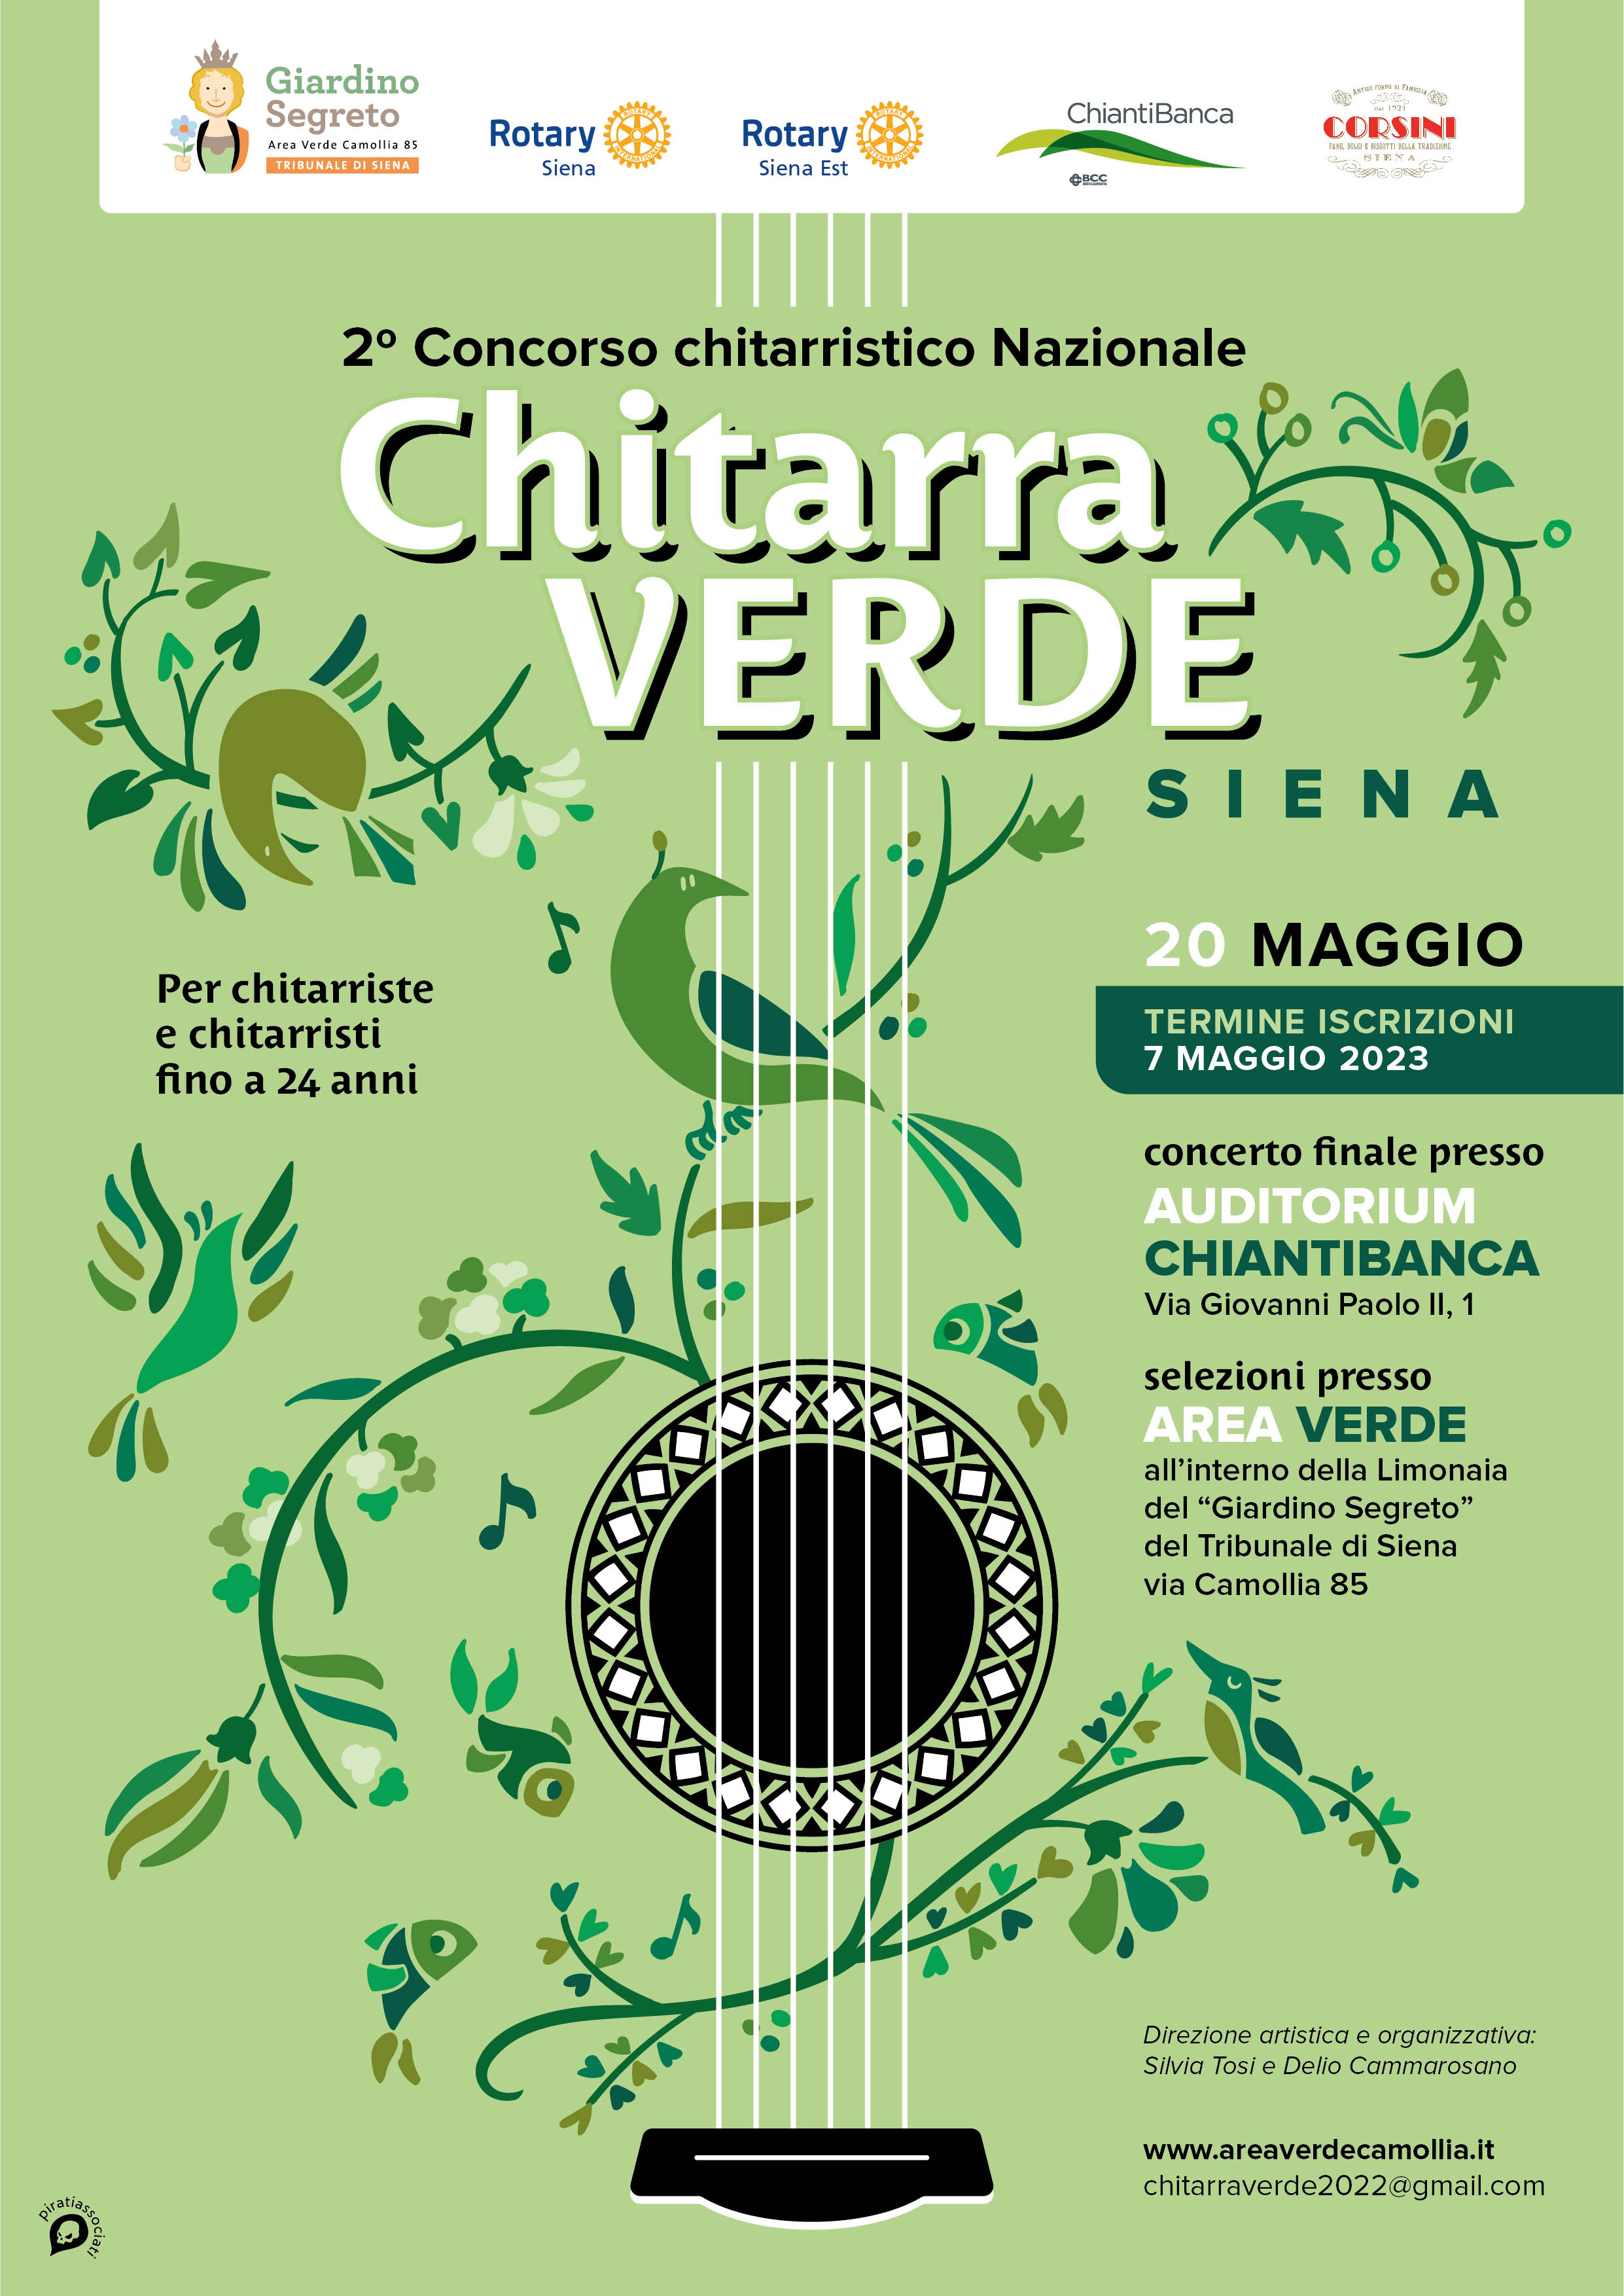 Concorso chitarristico Nazionale Chitarra Verde Siena - Scadenza 10 maggio 2023